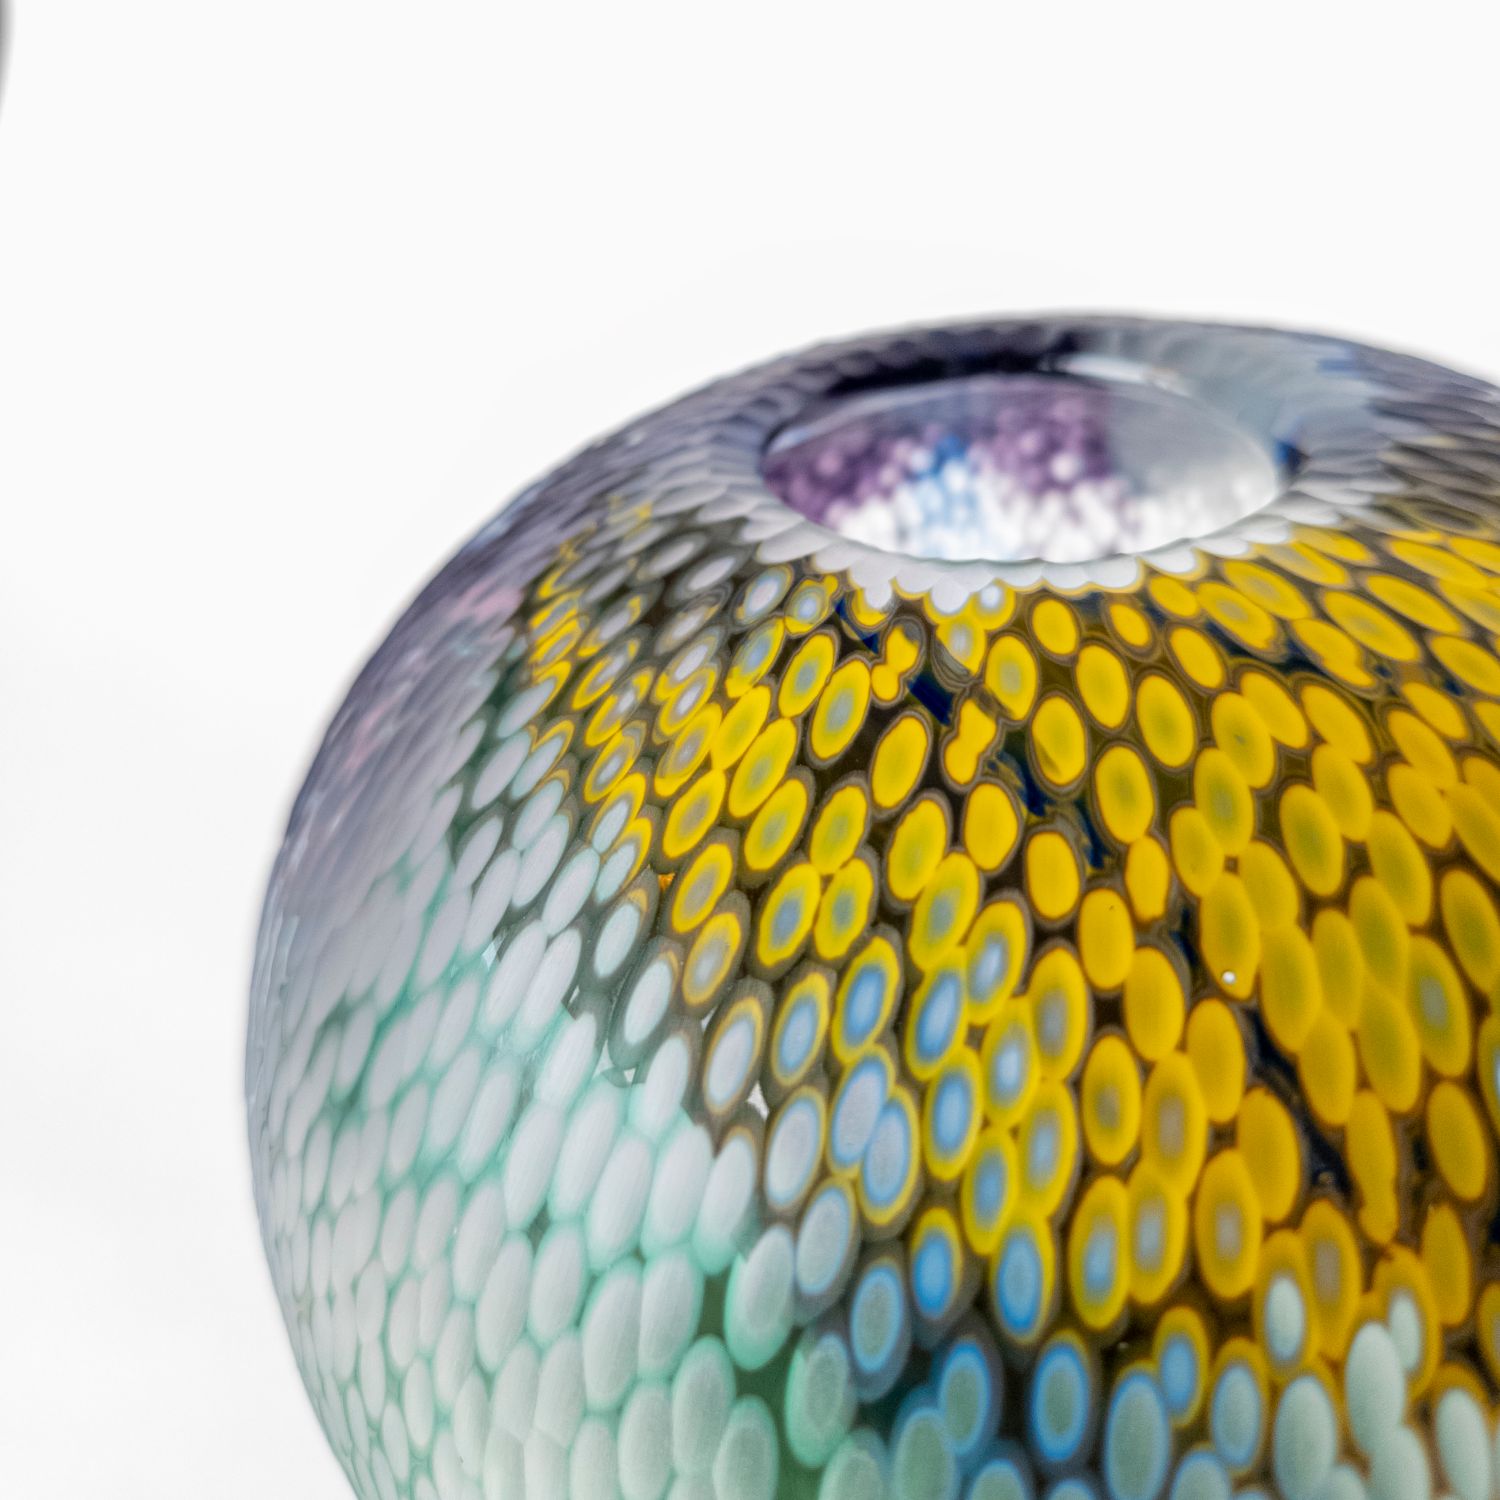 Sydni Weatherson: Iris – Glass Vase Product Image 3 of 8